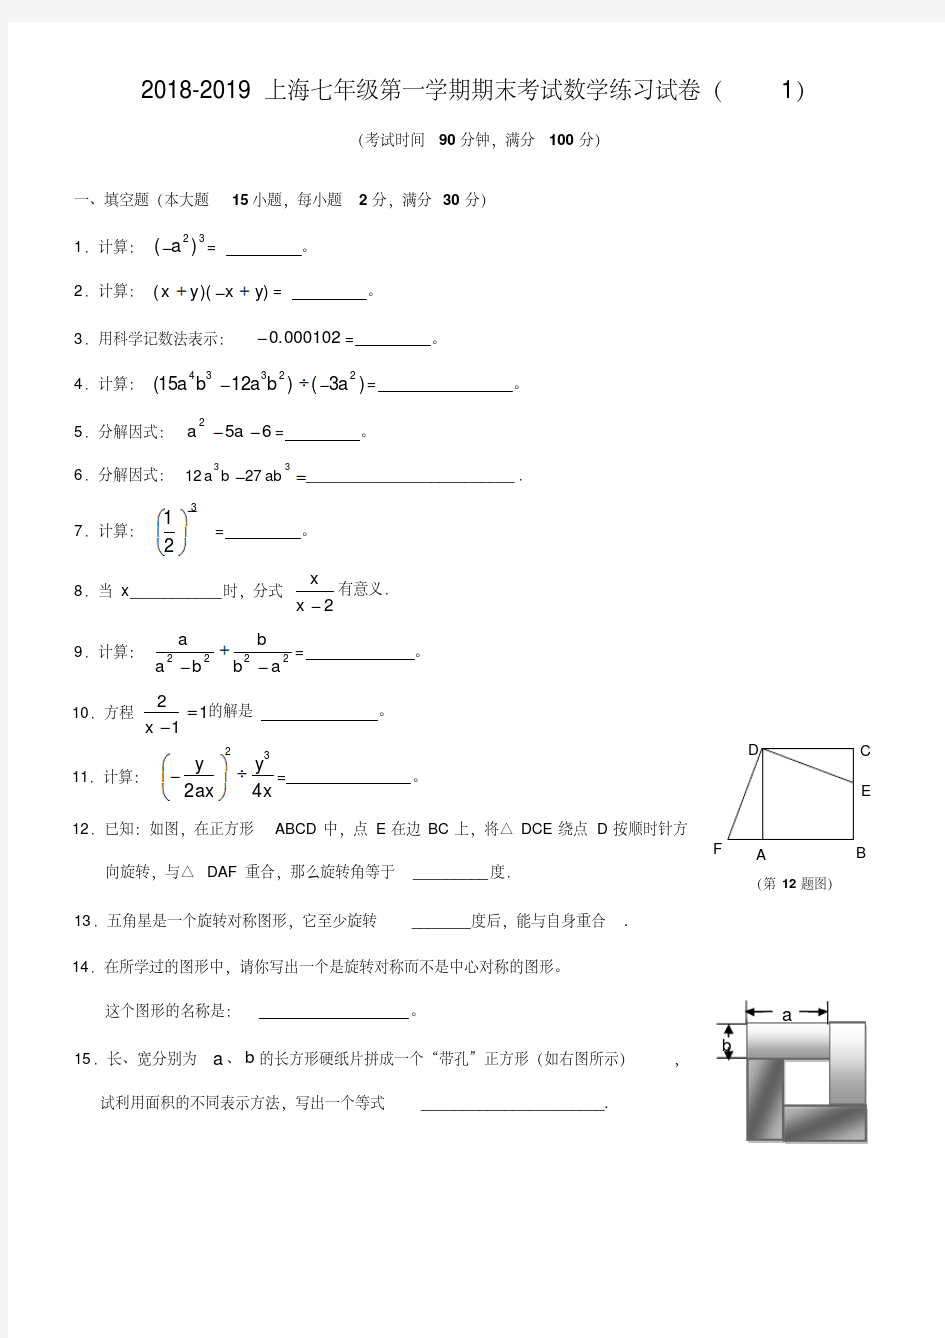 2018-2019上海七年级数学期末试卷及答案(1)(20200420015351)